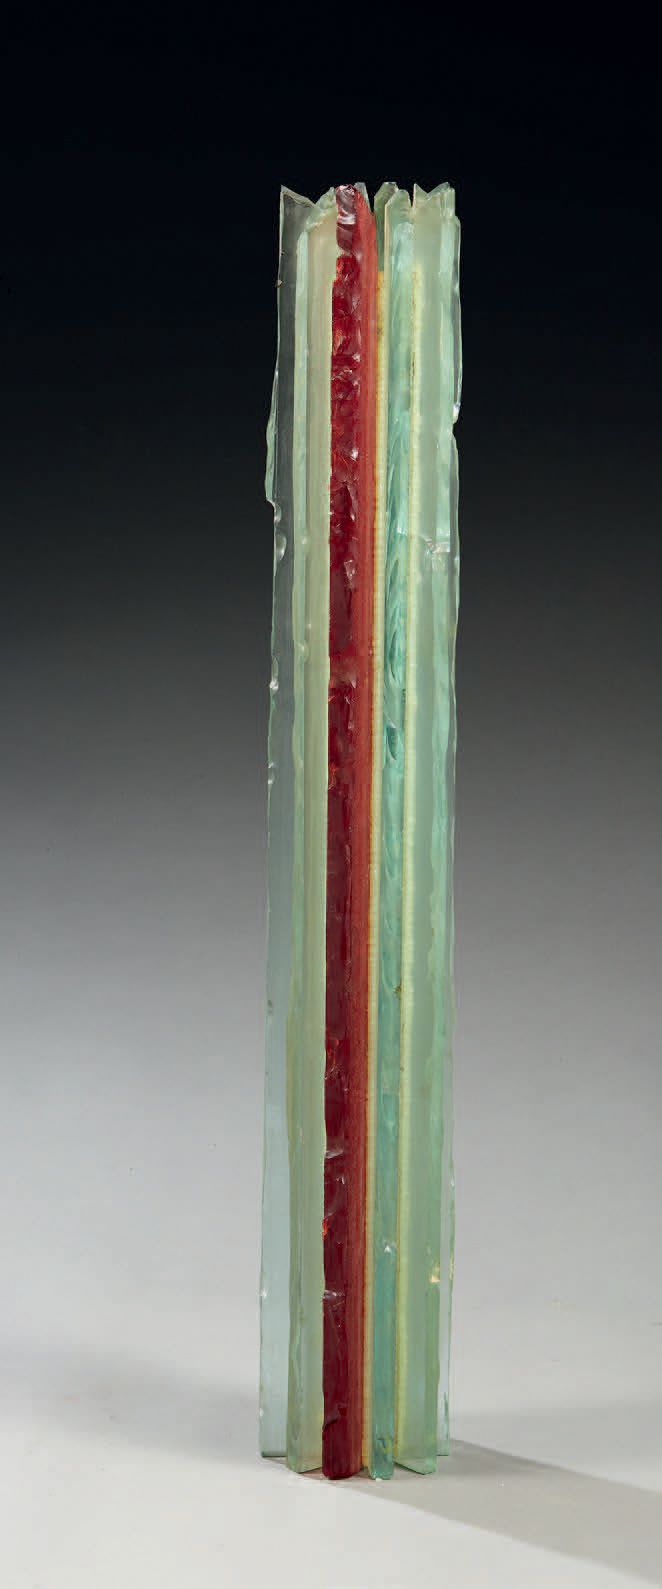 TRAVAIL 1970-1980 
Lampe a poser en lames de verre taillé
H : 40 cm